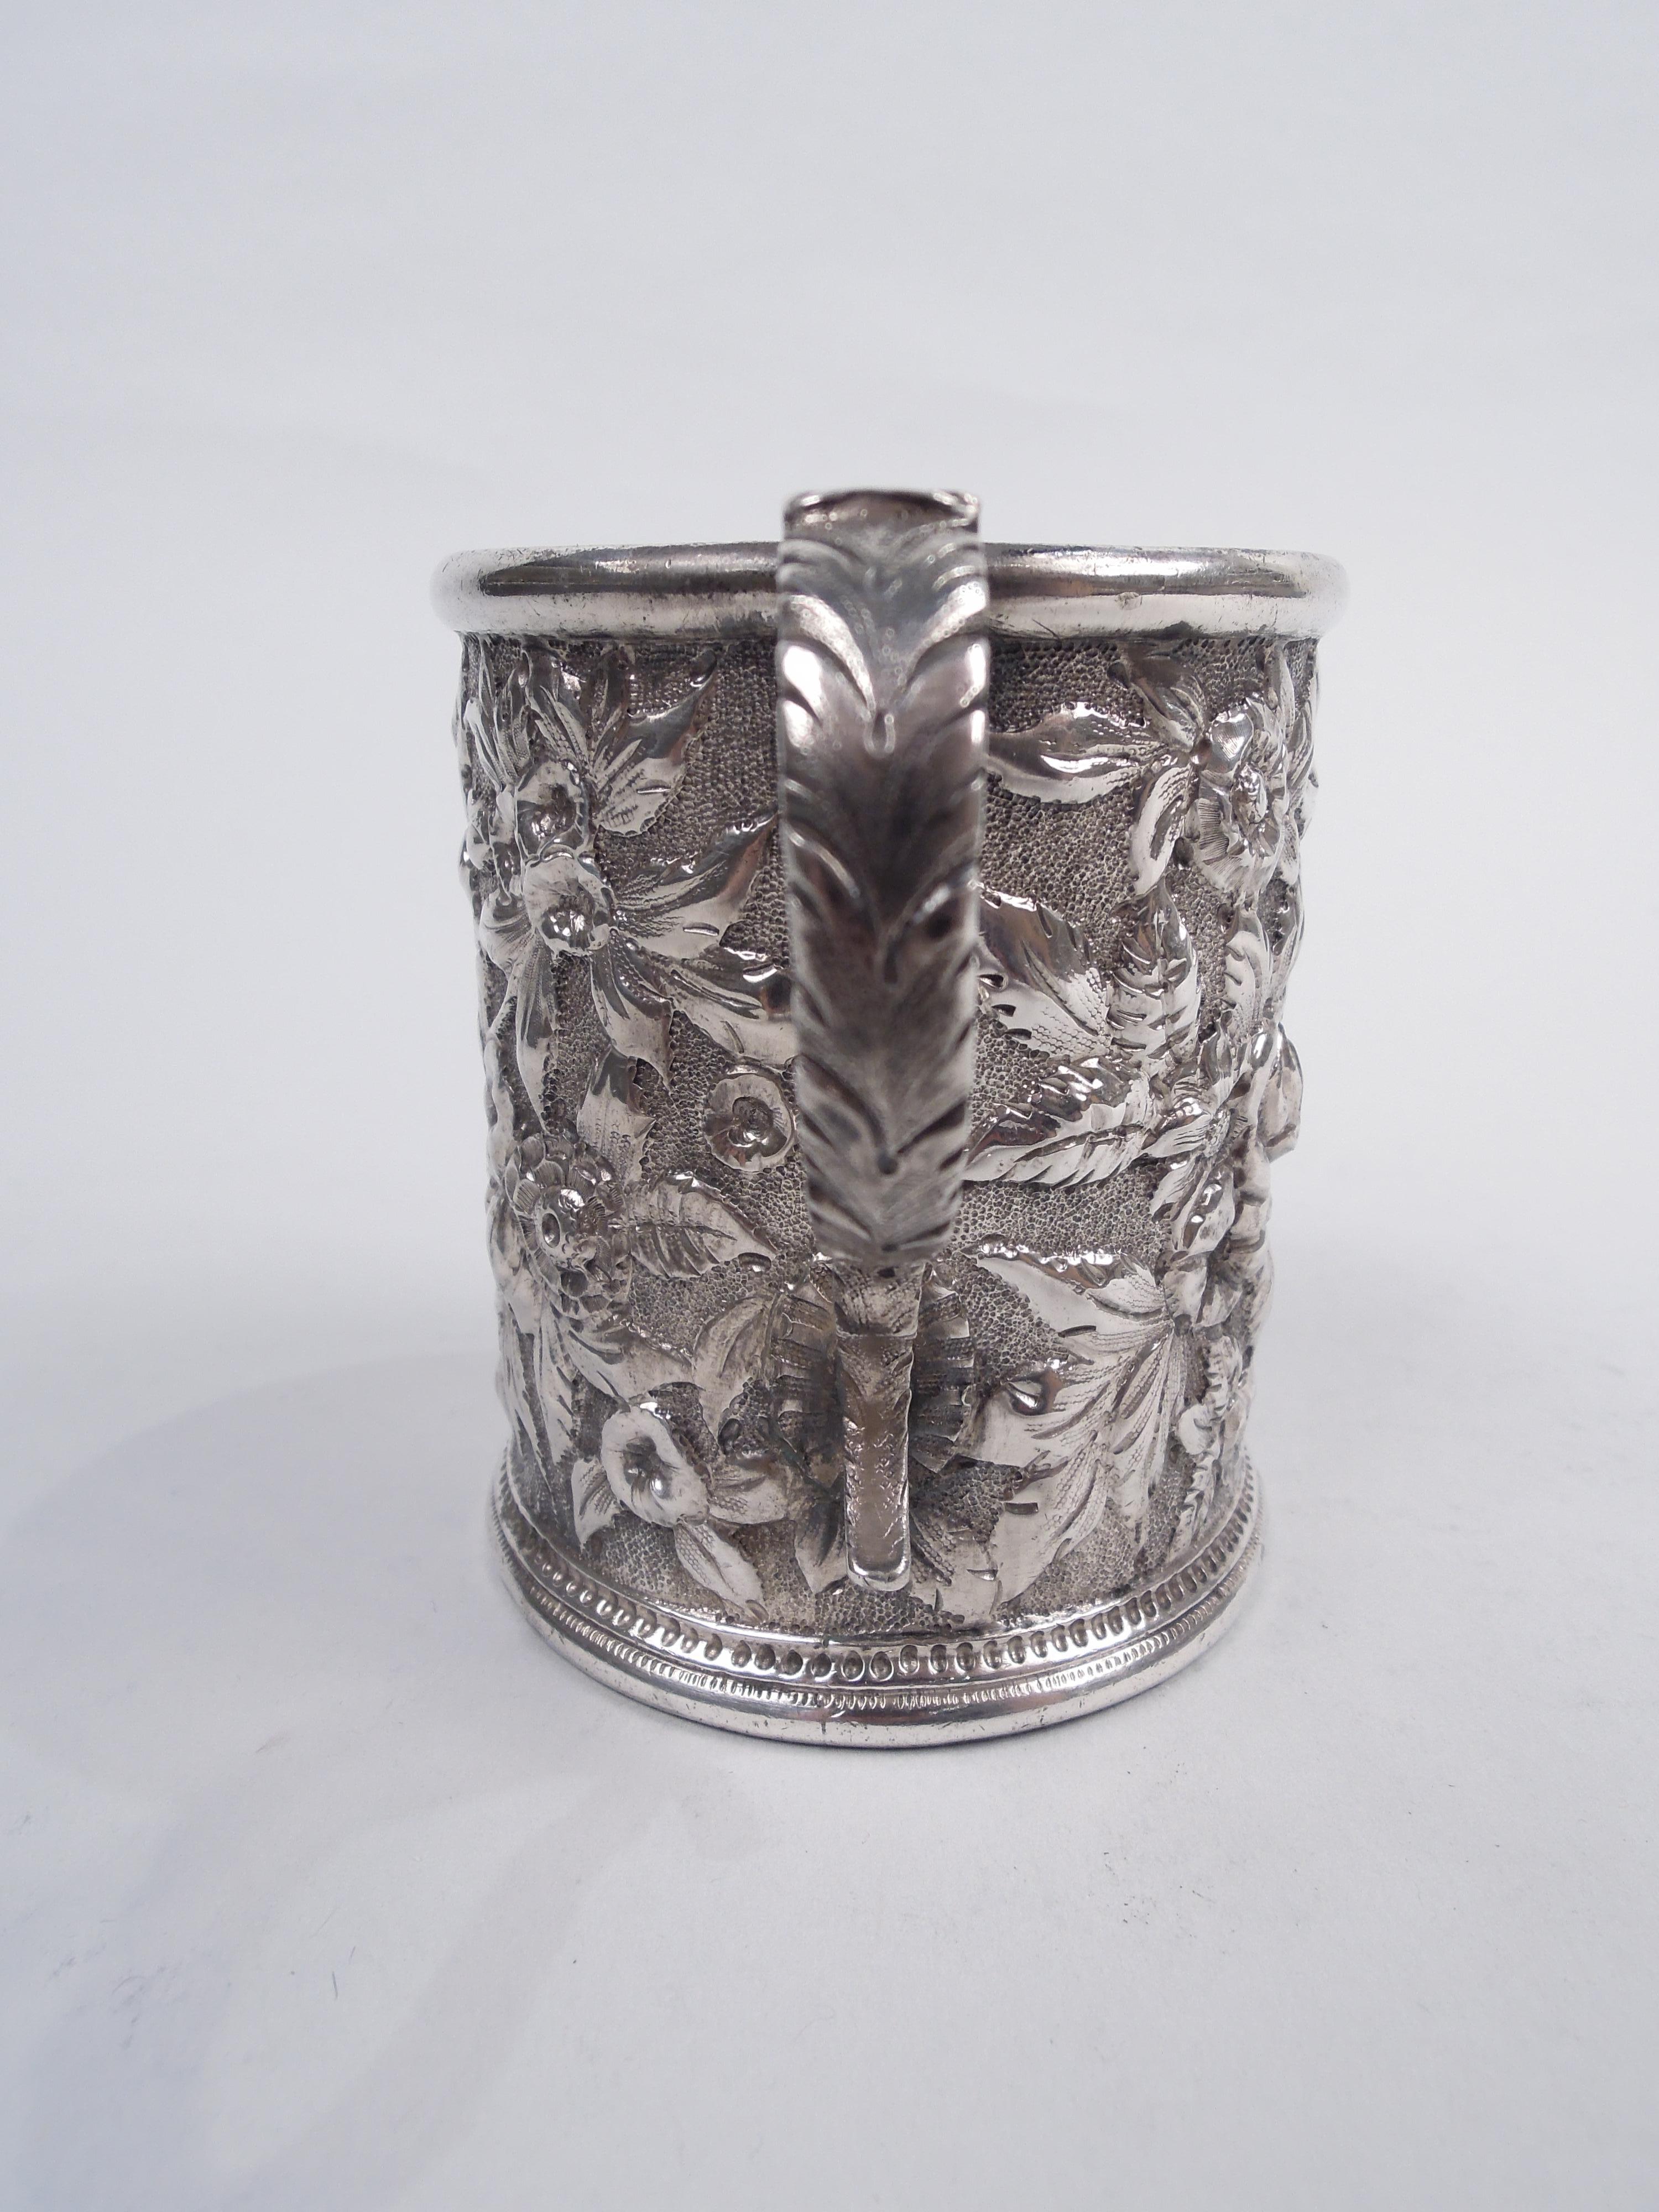 Repoussé Antique Kirk Baltimore Repousse Silver Baby Cup For Sale